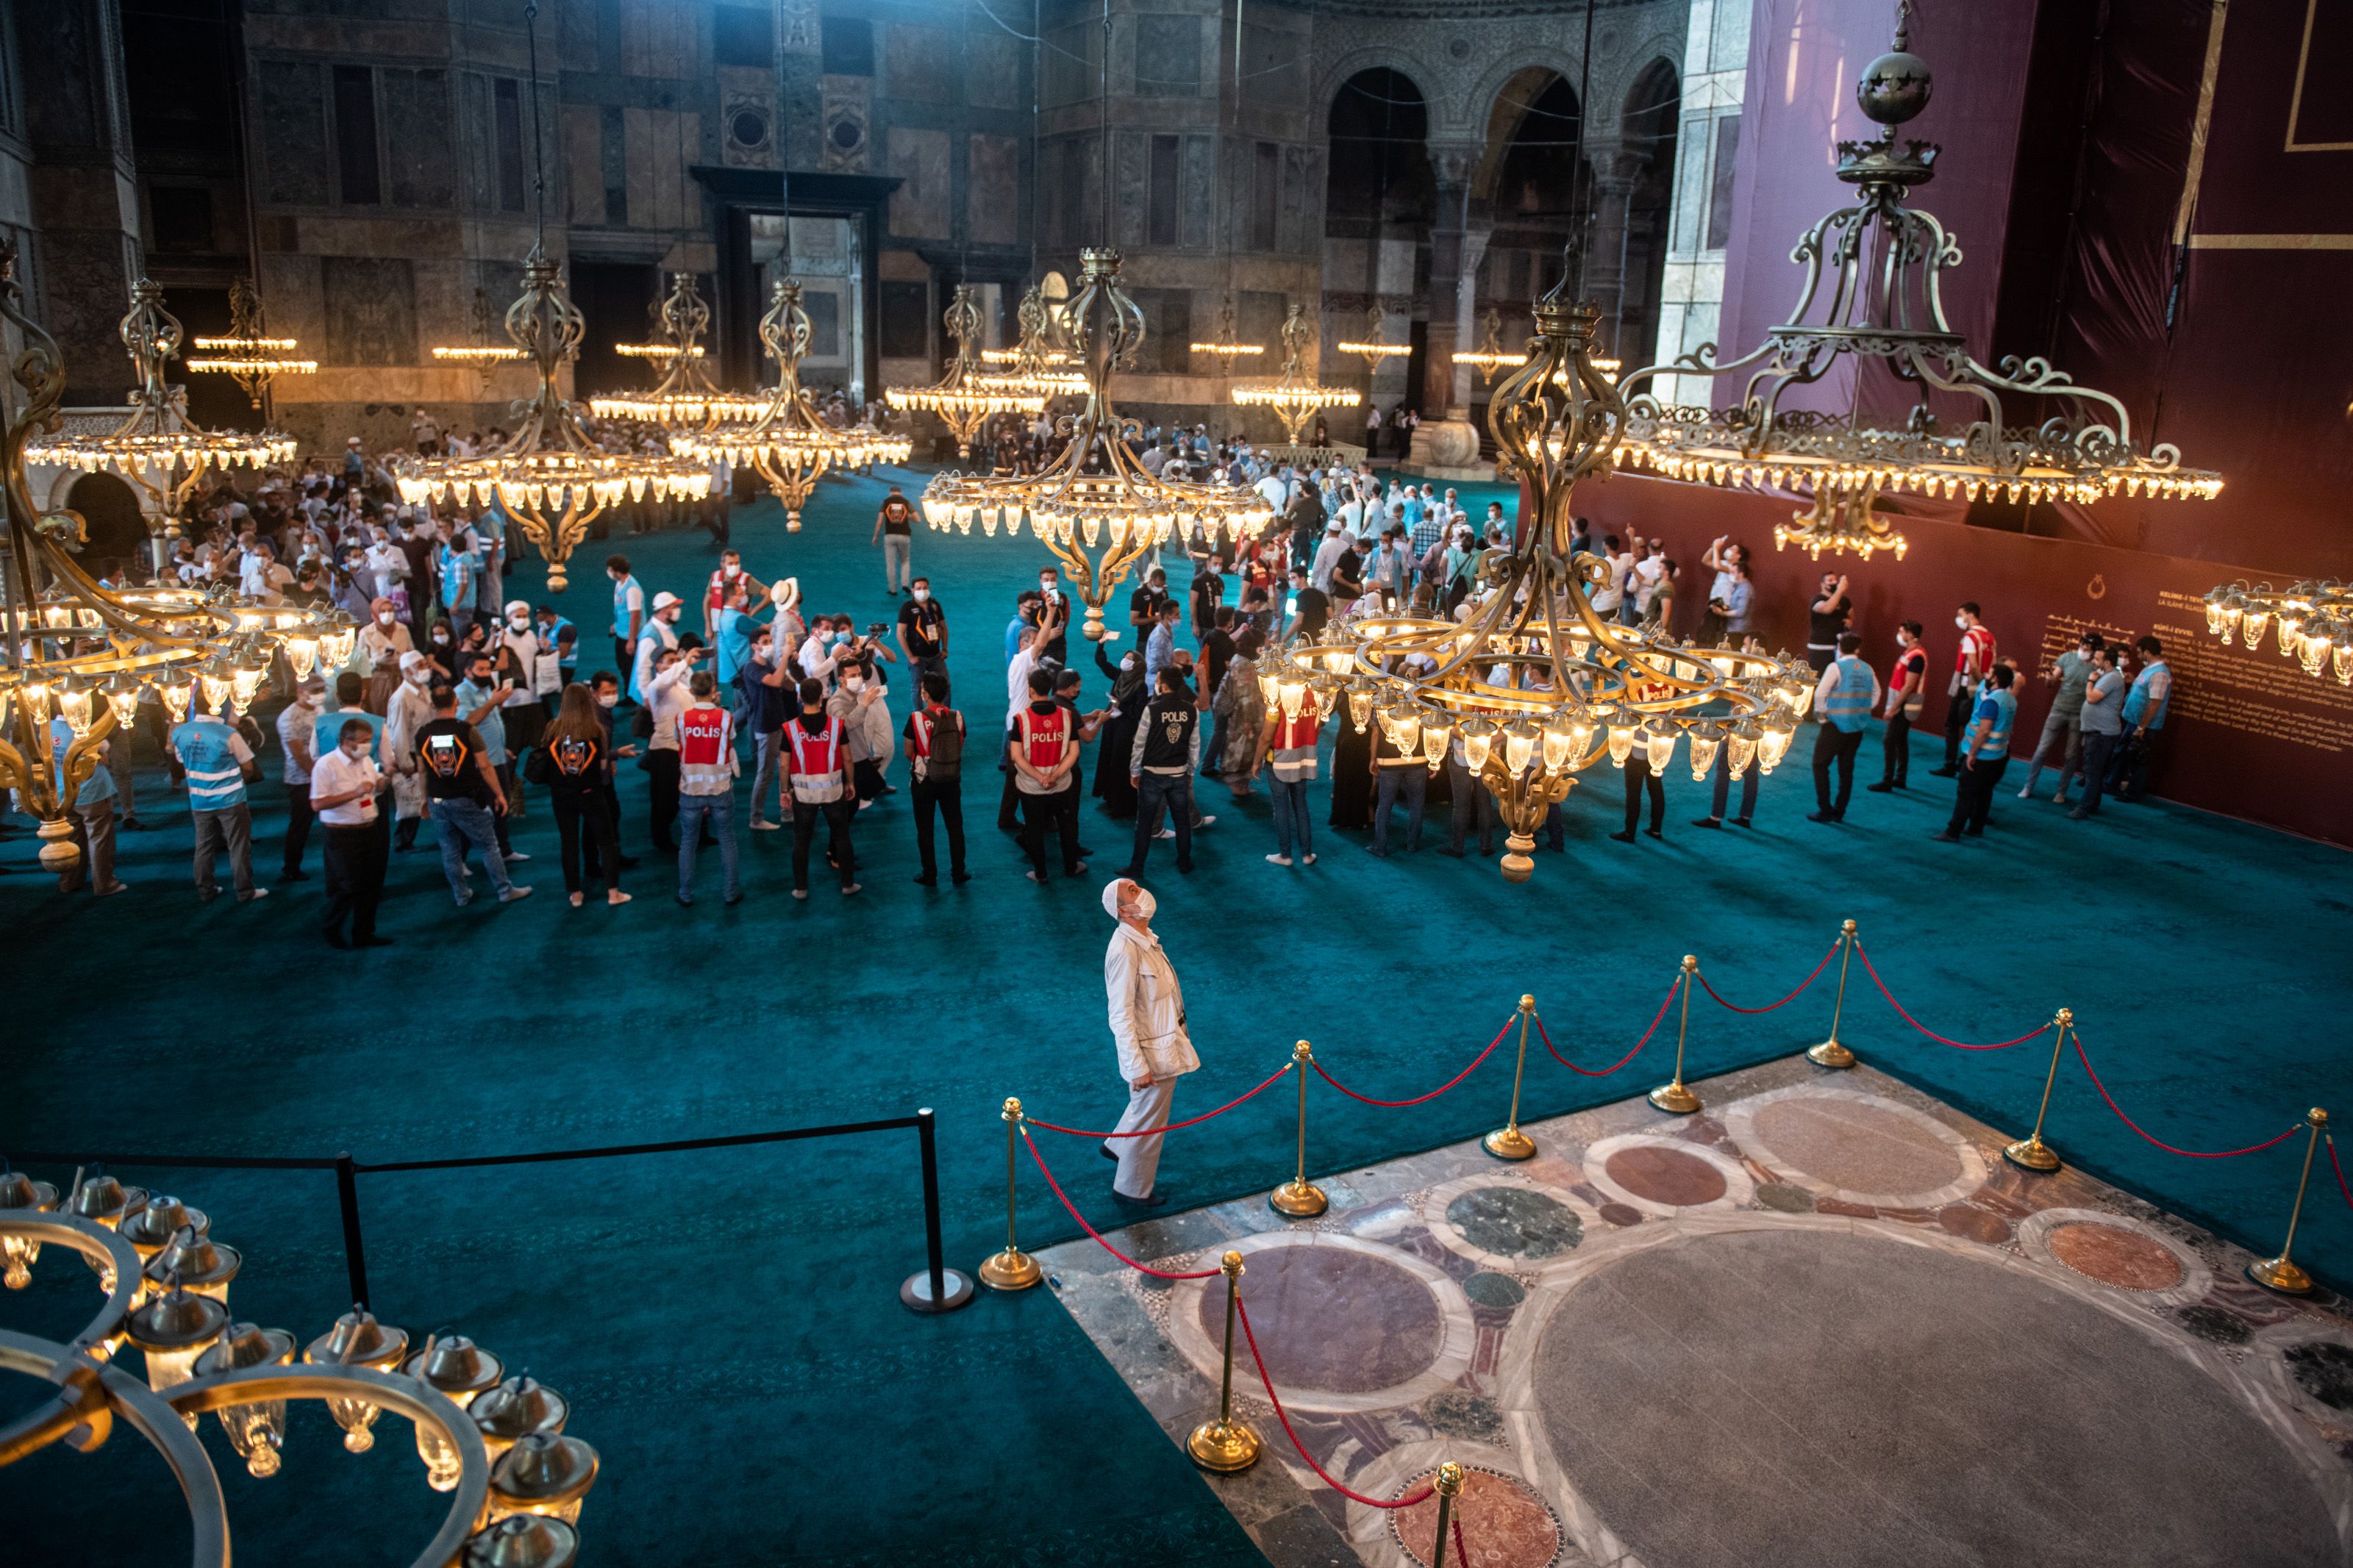 Inside Hagia Sophia on July 24.